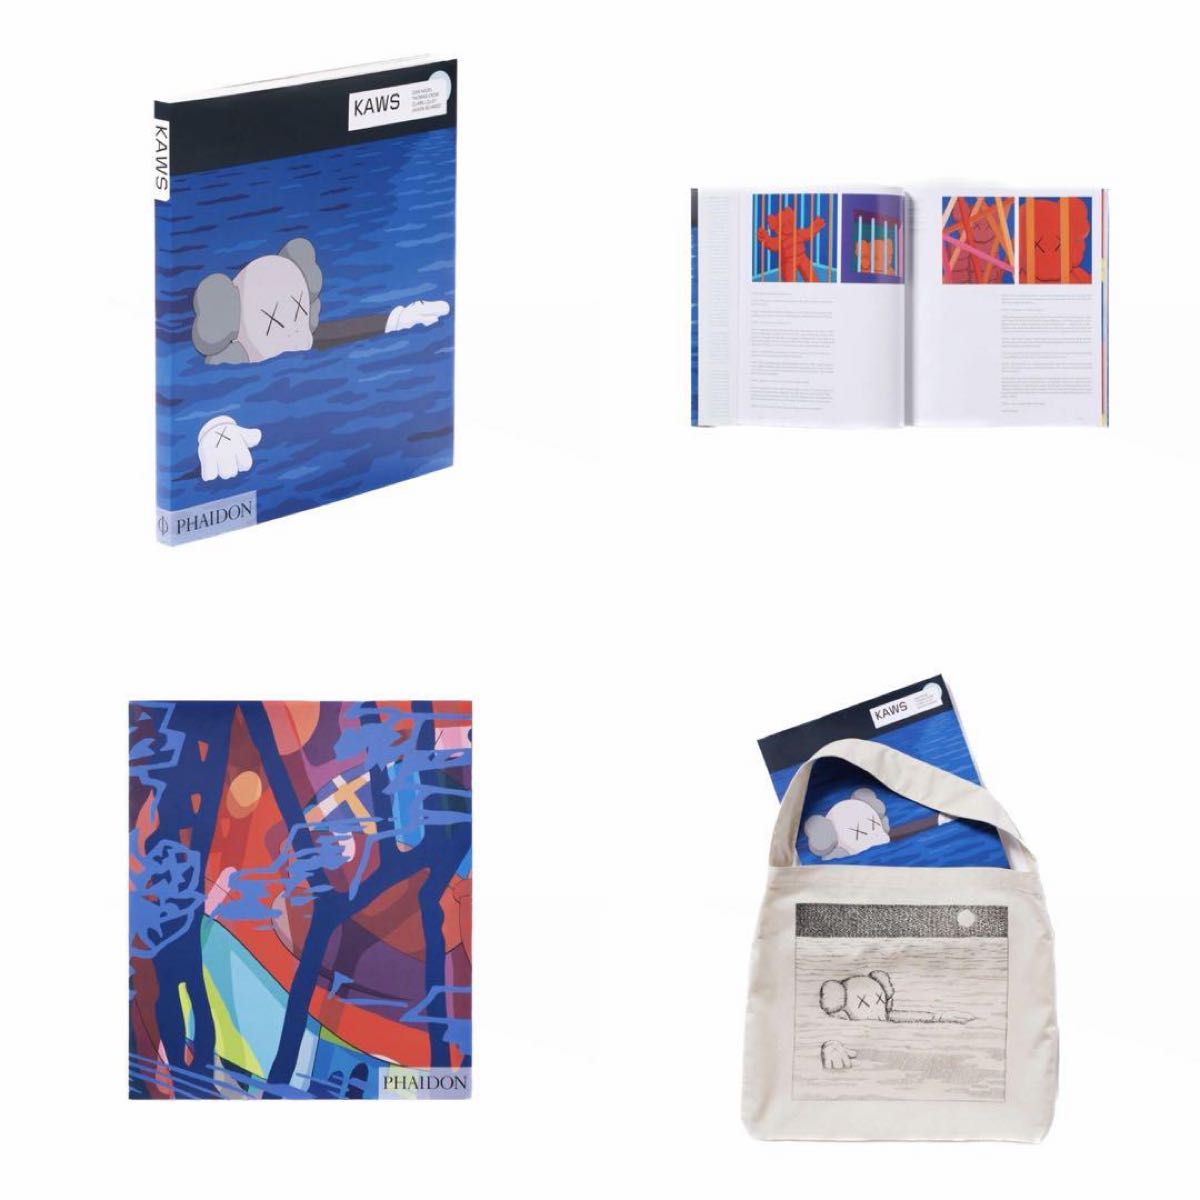 【新品】Uniqlo x KAWS Art Book & tote bagユニクロ x カウズ アートブック トートバッグ付き